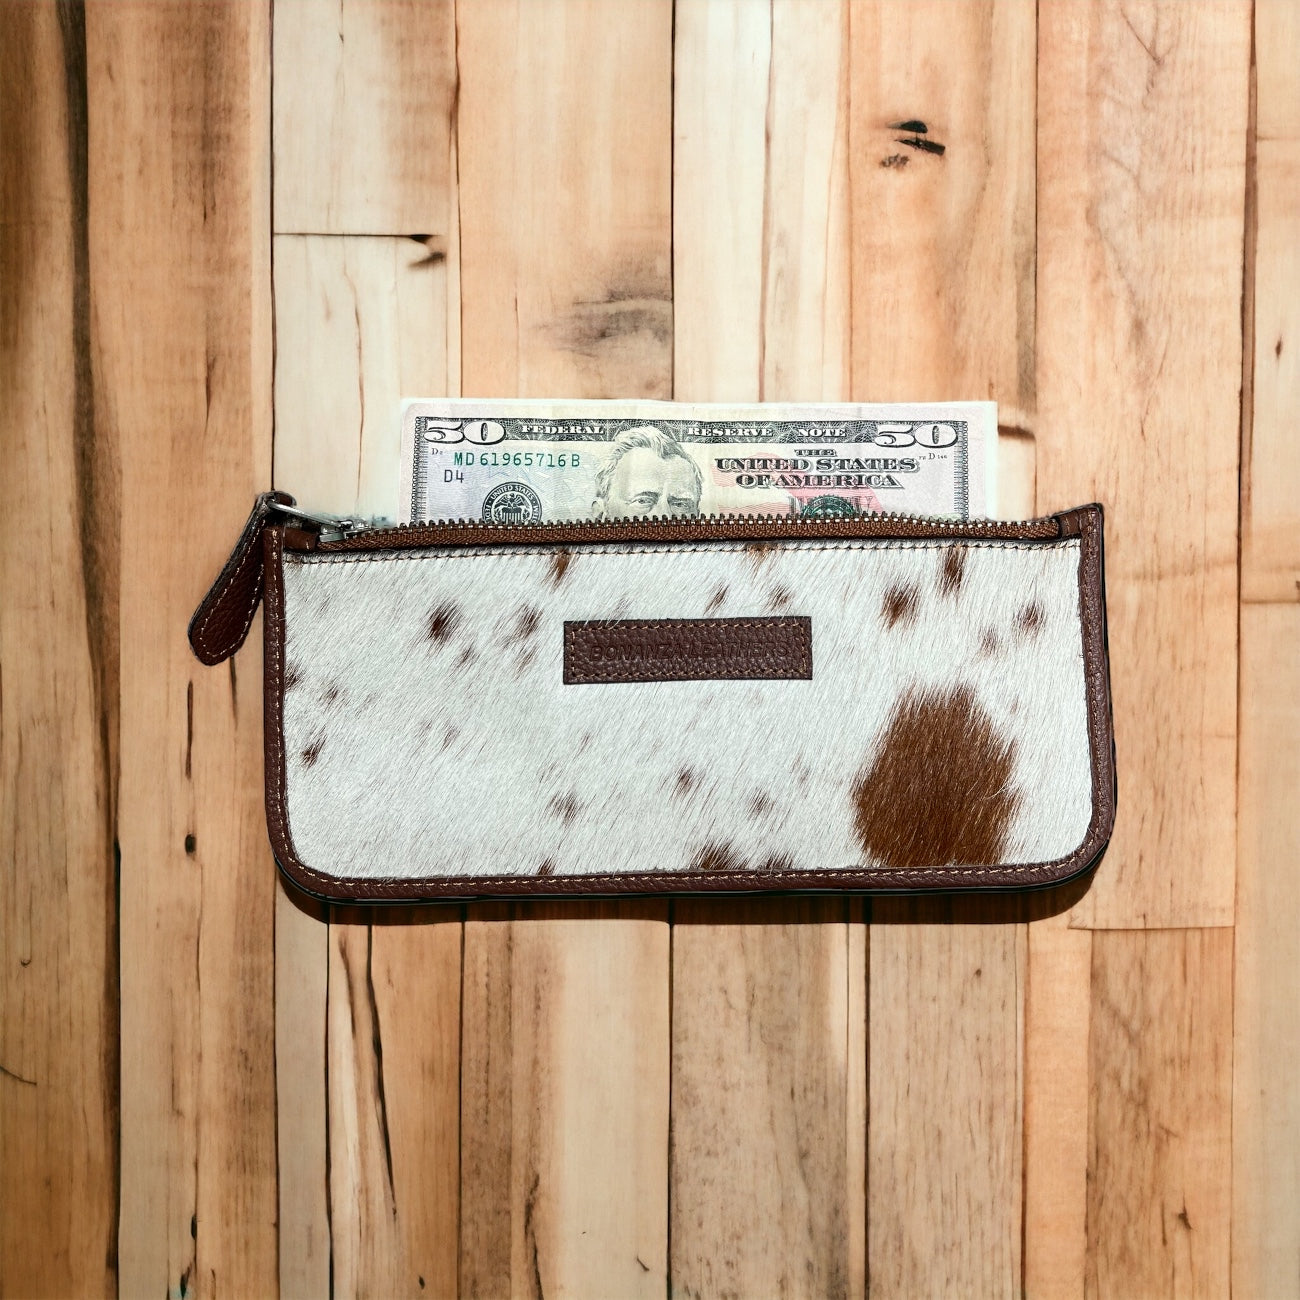 Cowhide wallet bag insert - Rodeo Cowhide Rugs